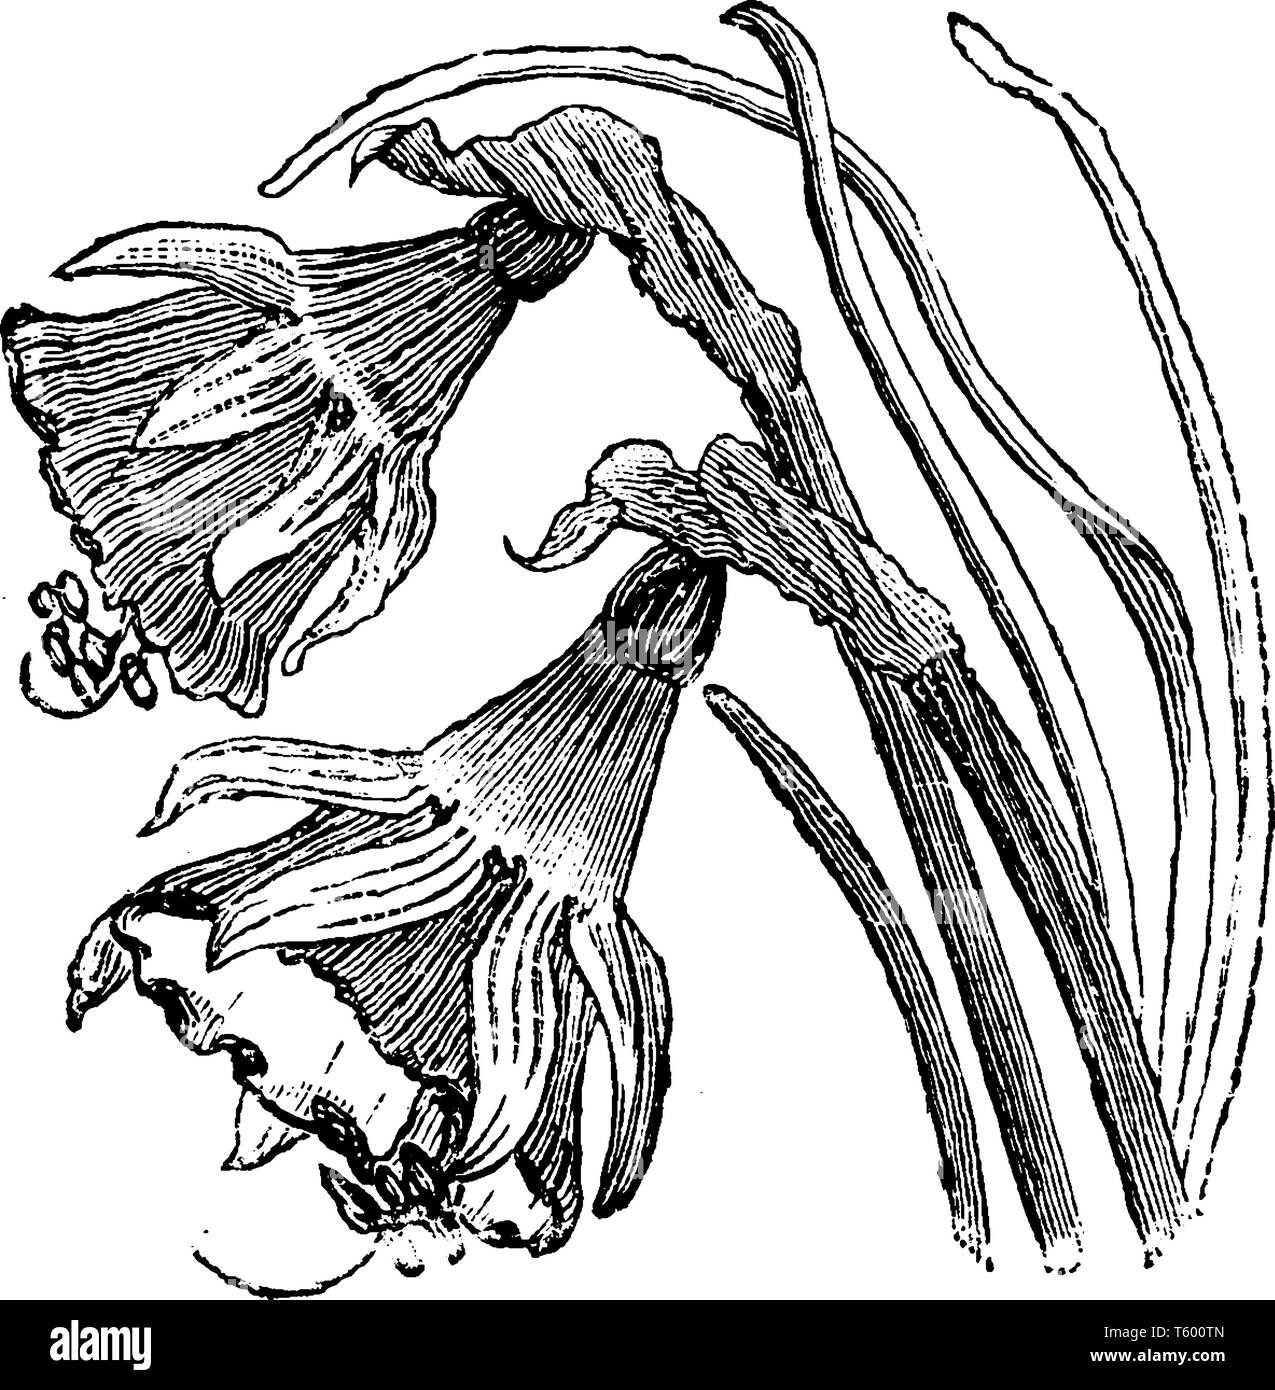 Narcissus bulbocodium è la specie di pianta flowering in famiglia Amaryllidaceae, è normalmente trovata in Francia meridionale e occidentale, la Spagna e la porta Illustrazione Vettoriale